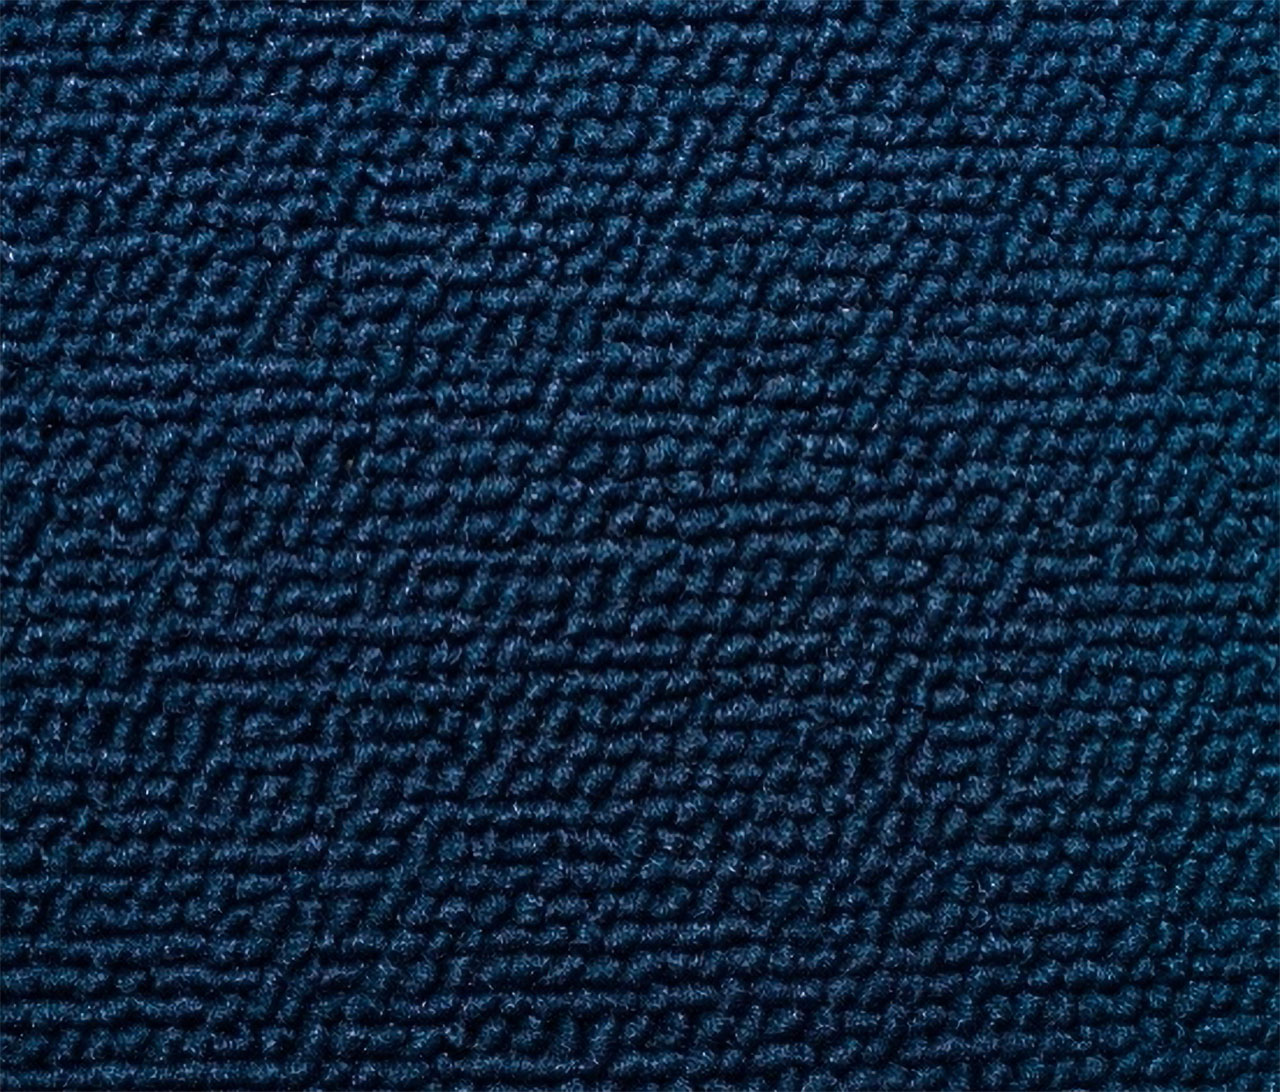 Valiant Regal VC Valiant V8 Sedan B1 Blue Carpet (Image 1 of 1)